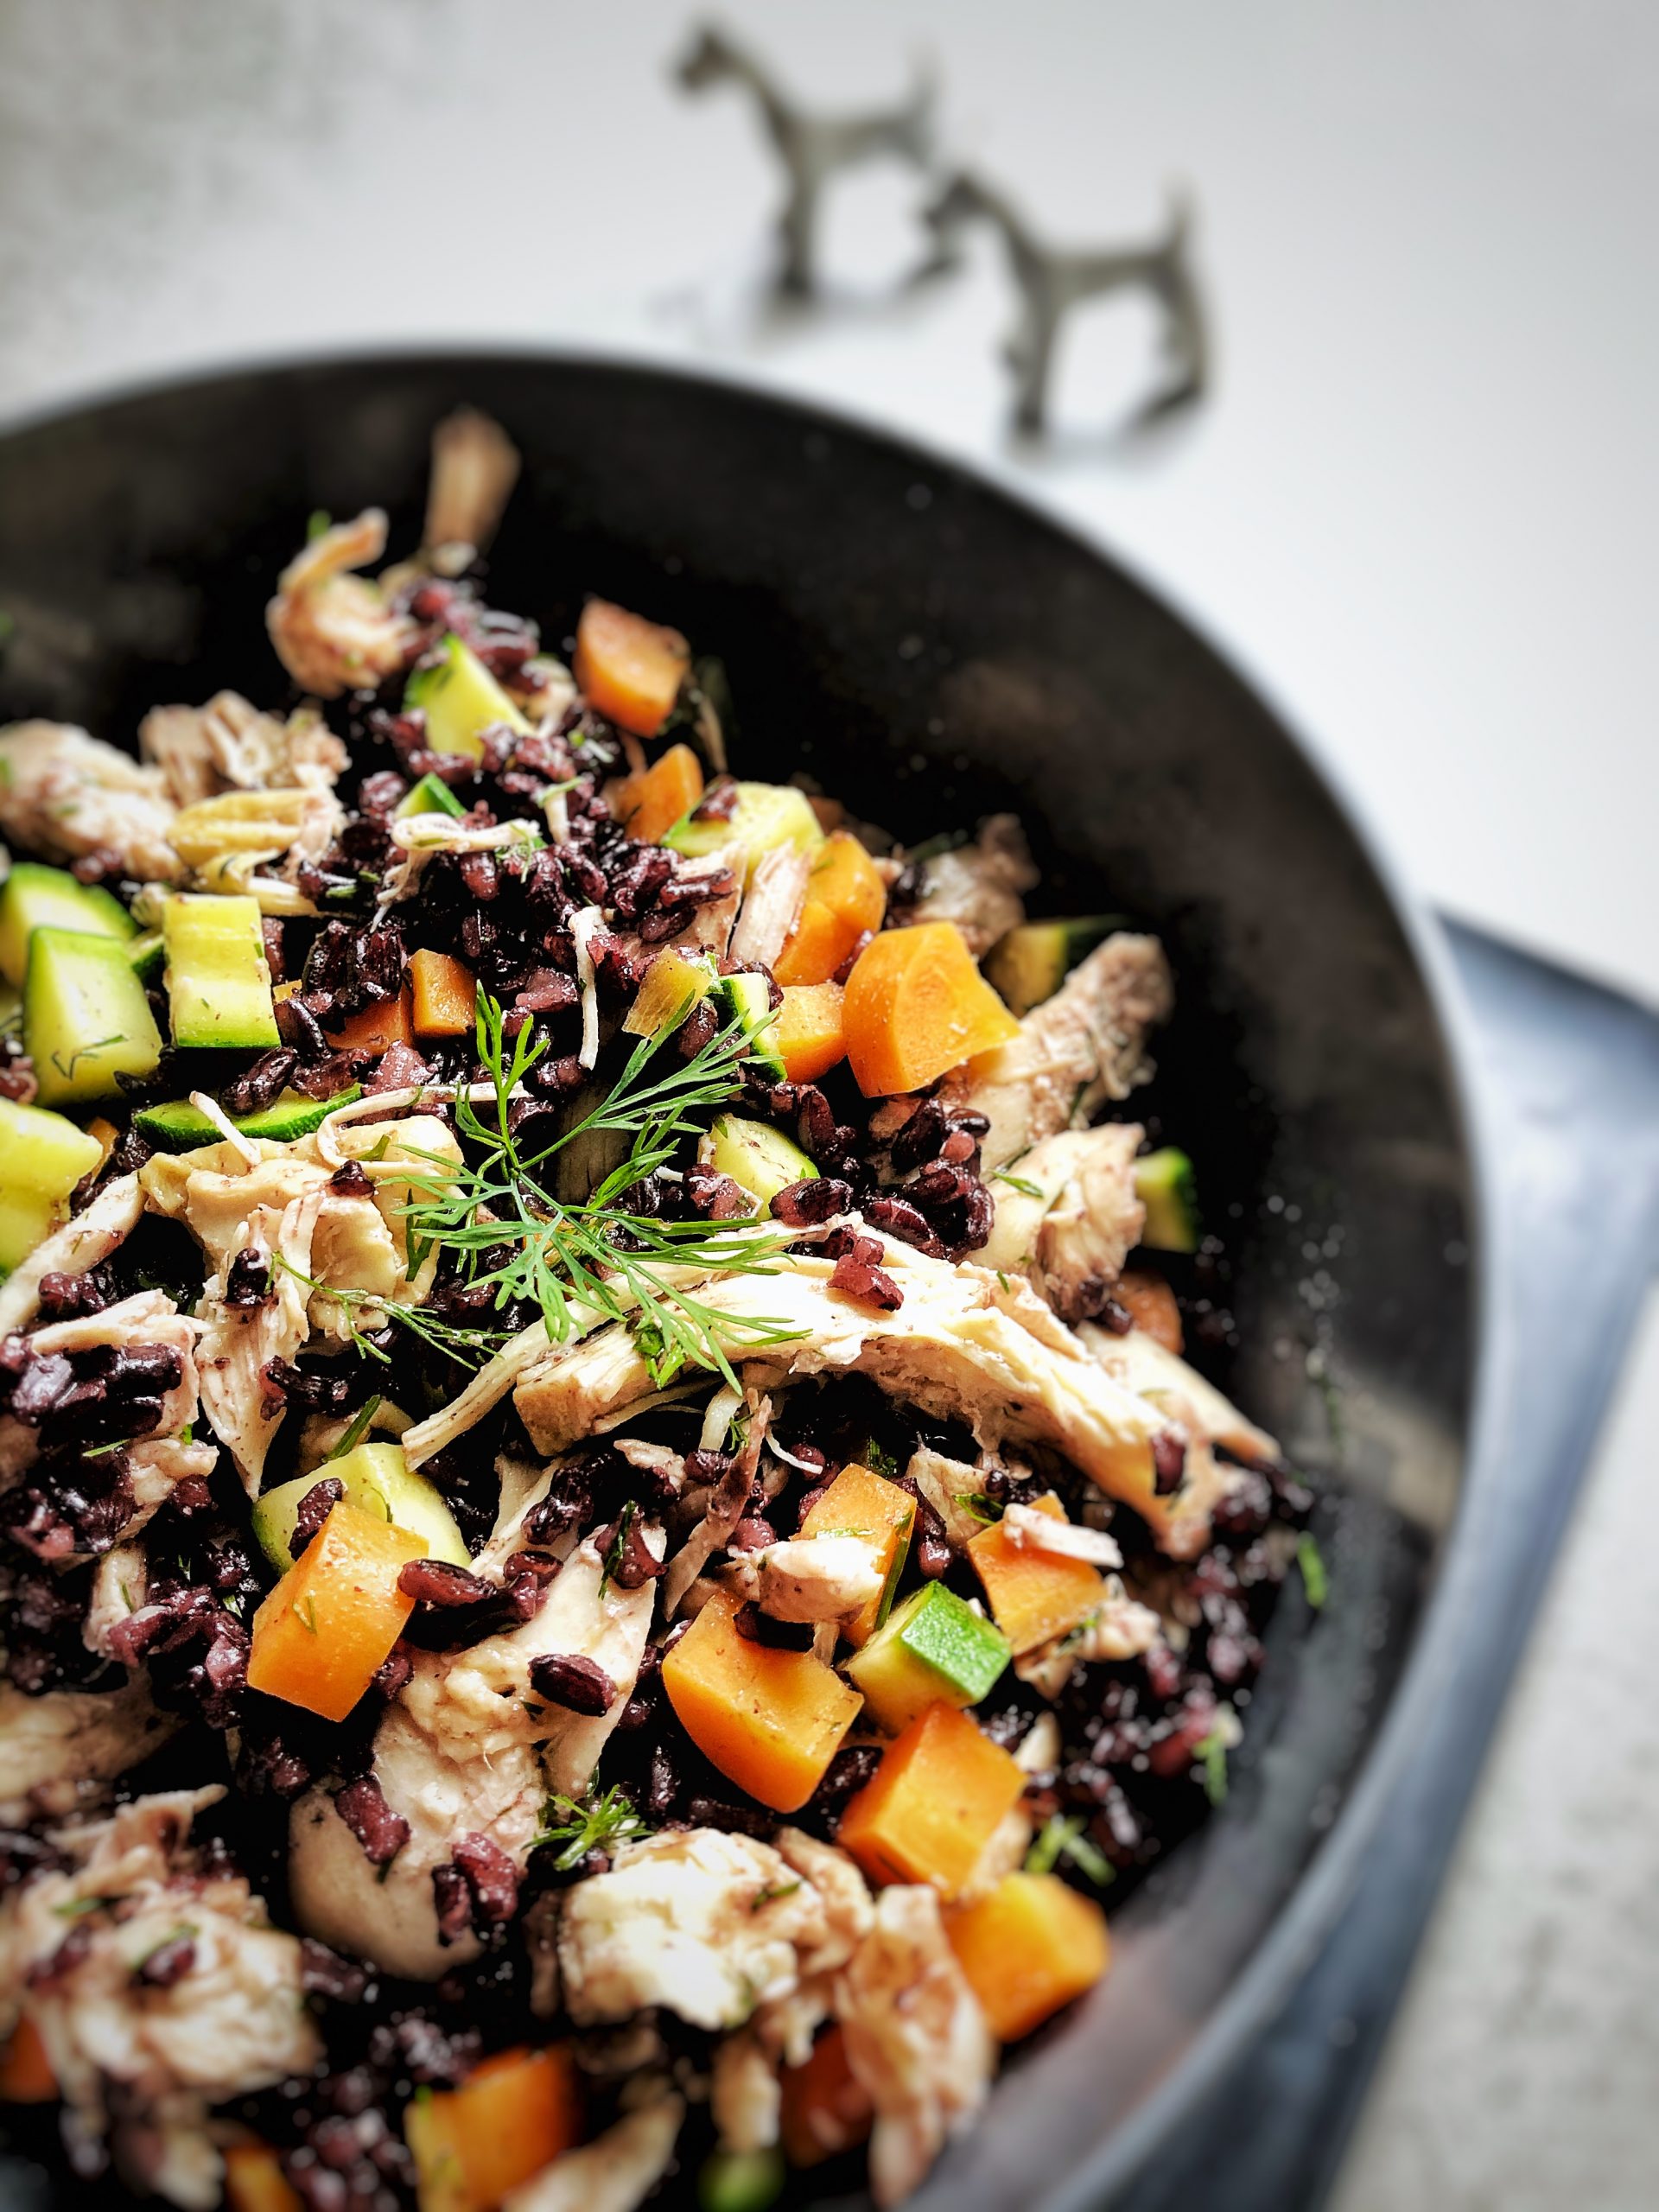 NAPFGAREN: In Suppe gekochtes Huhn mit schwarzem Reis, Karotten und ...